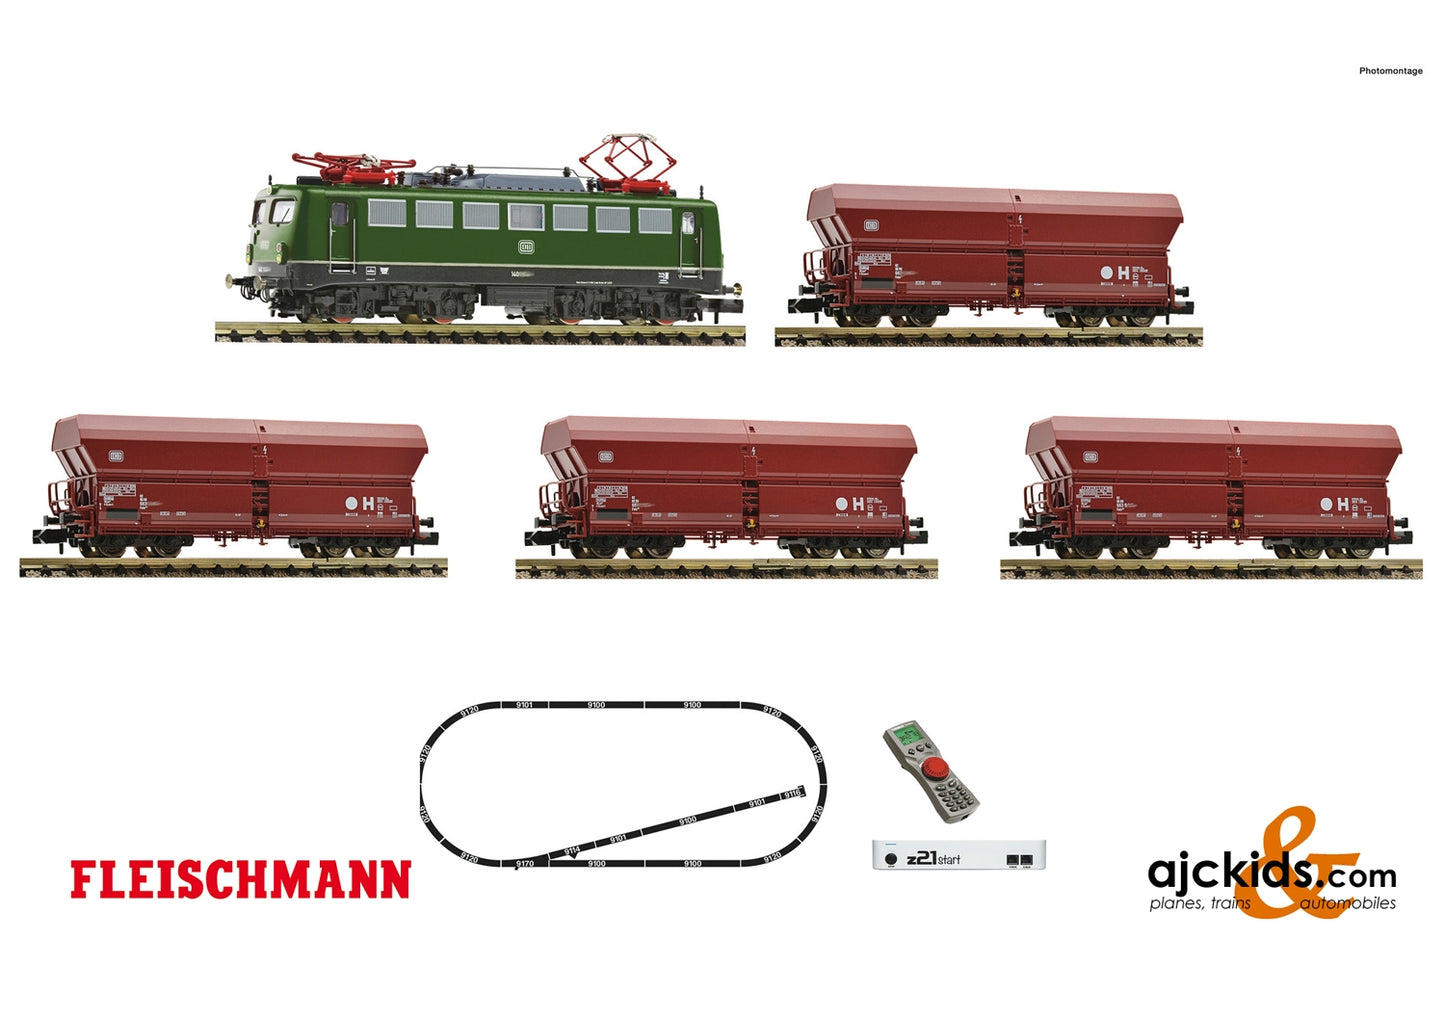 Fleischmann 931895 - z21 start digital set: Electric locomotive class 140 and goods train